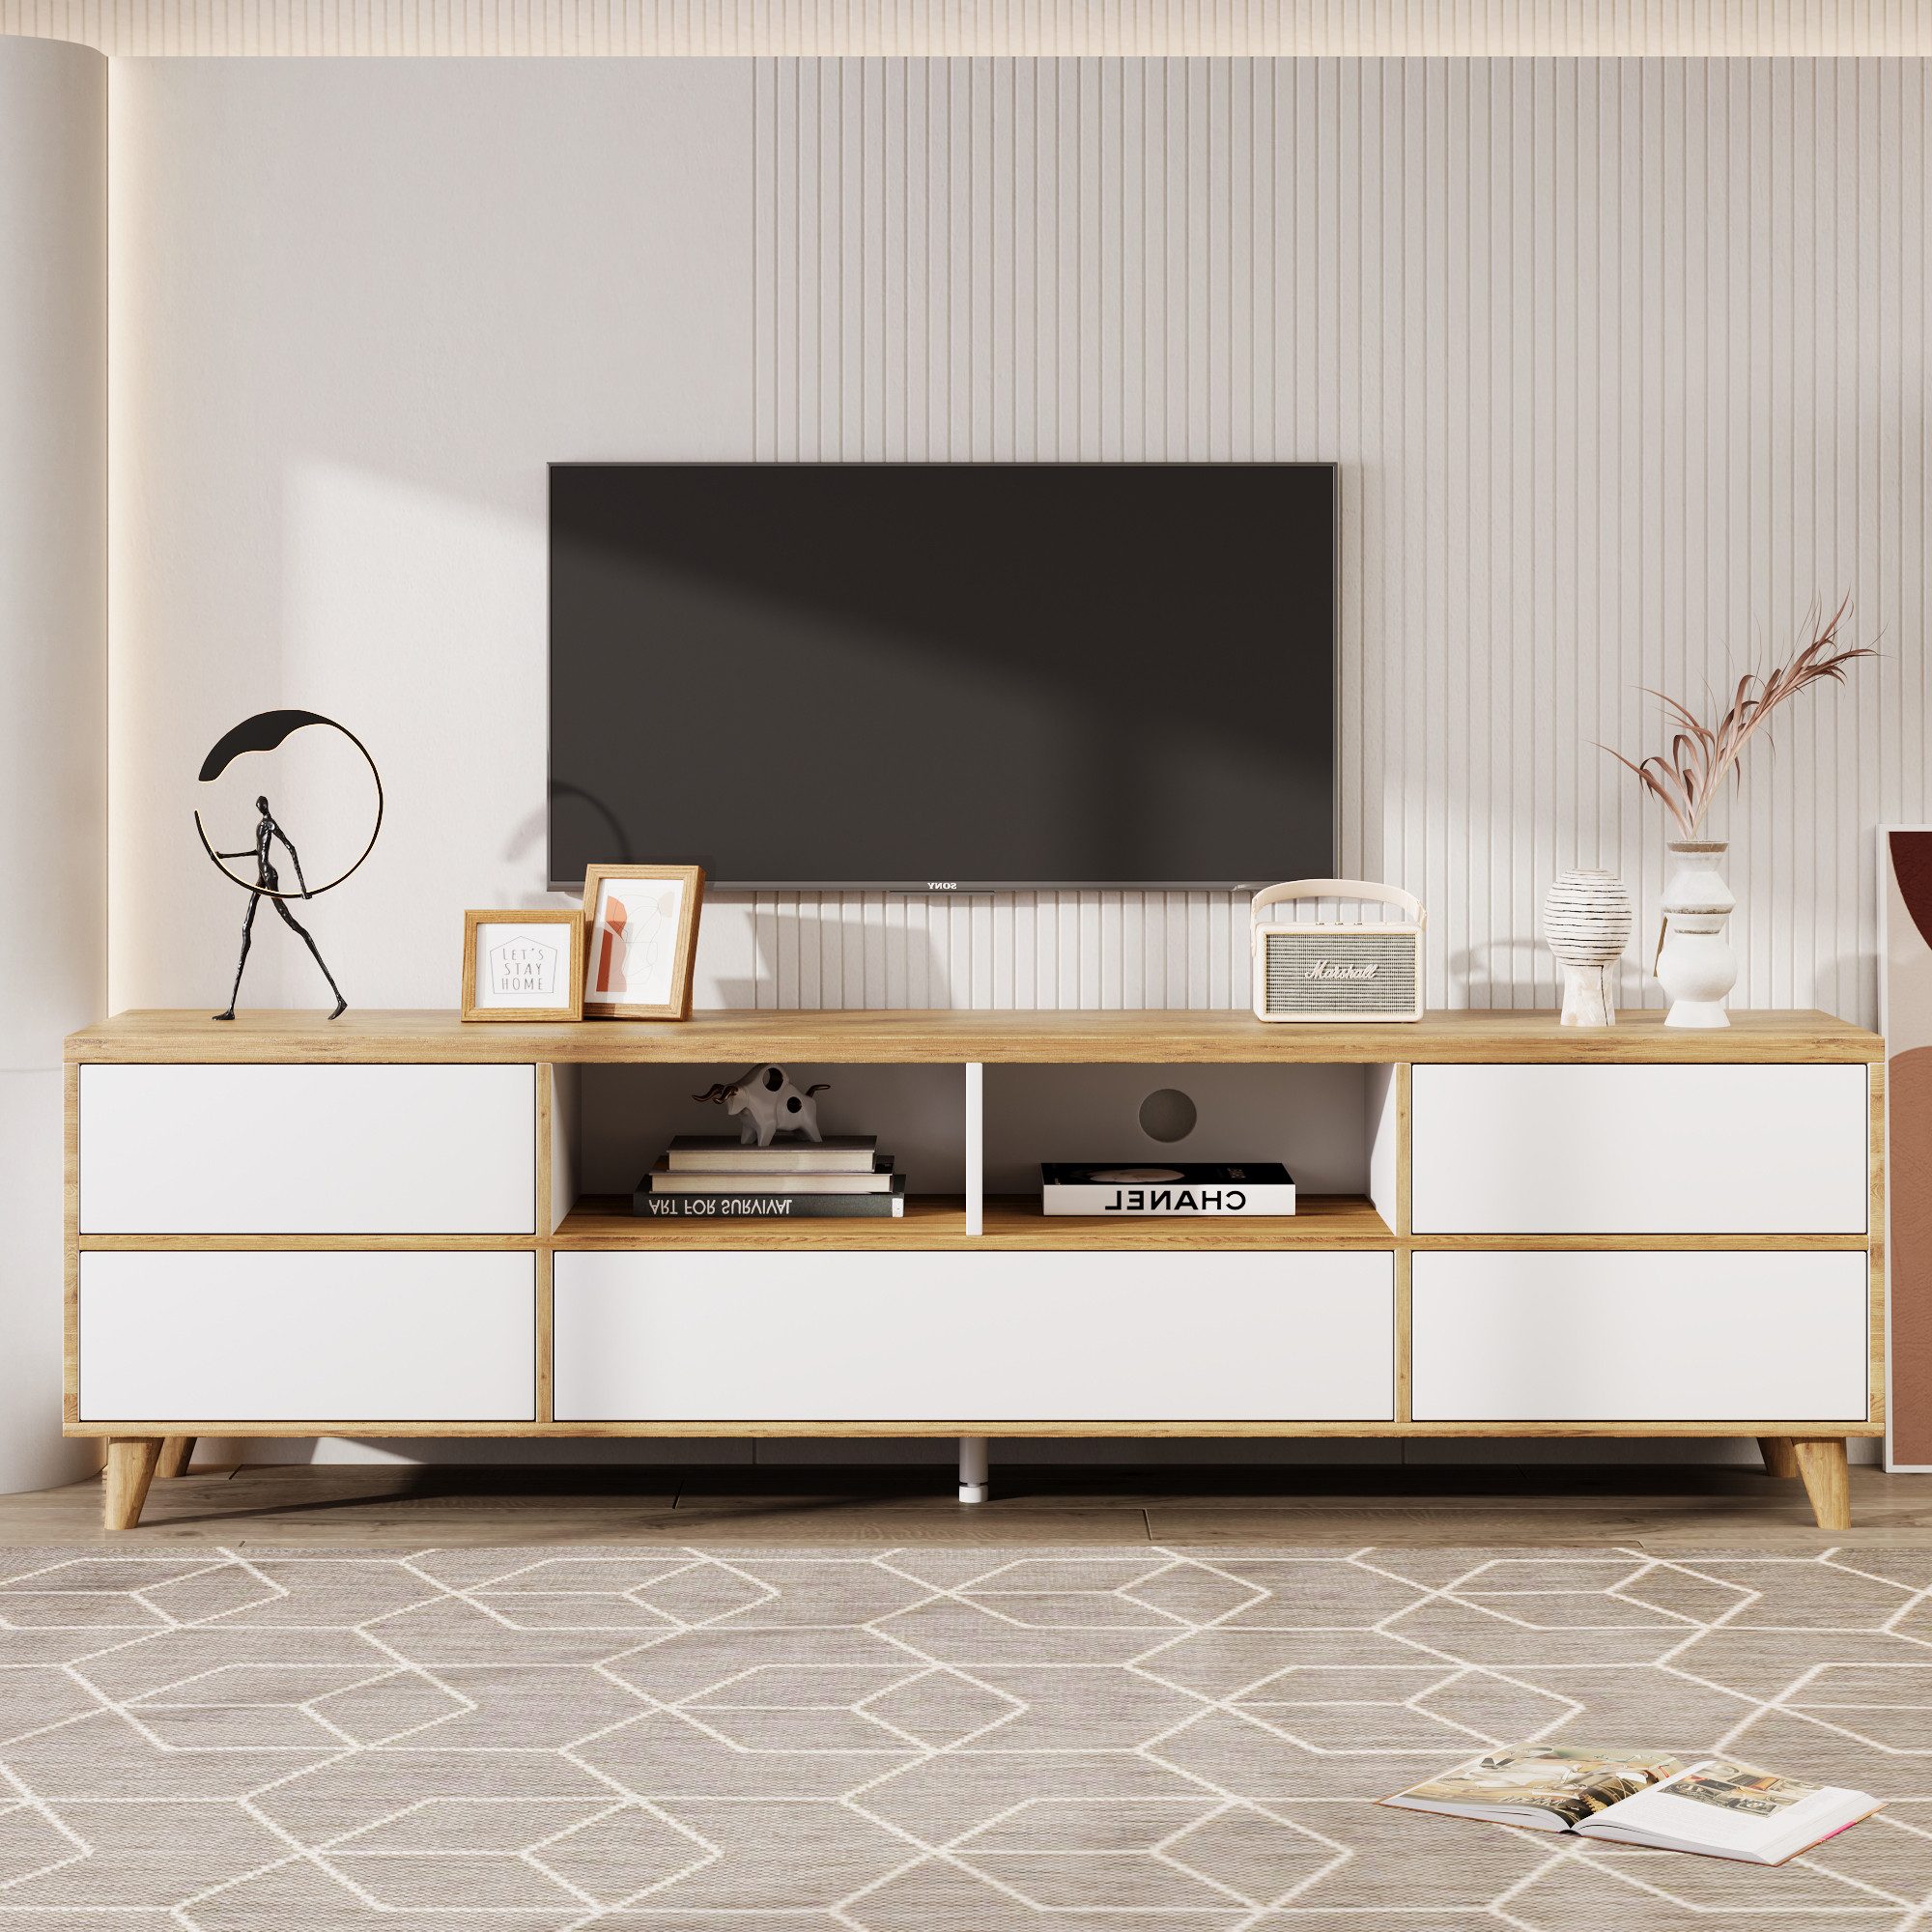 IDEASY TV-Schrank Moderner weißer TV-Schrank aus Holz mit offenem Stauraum, einfach zu montieren, Länge 175 cm, Höhe 10 cm über dem Boden